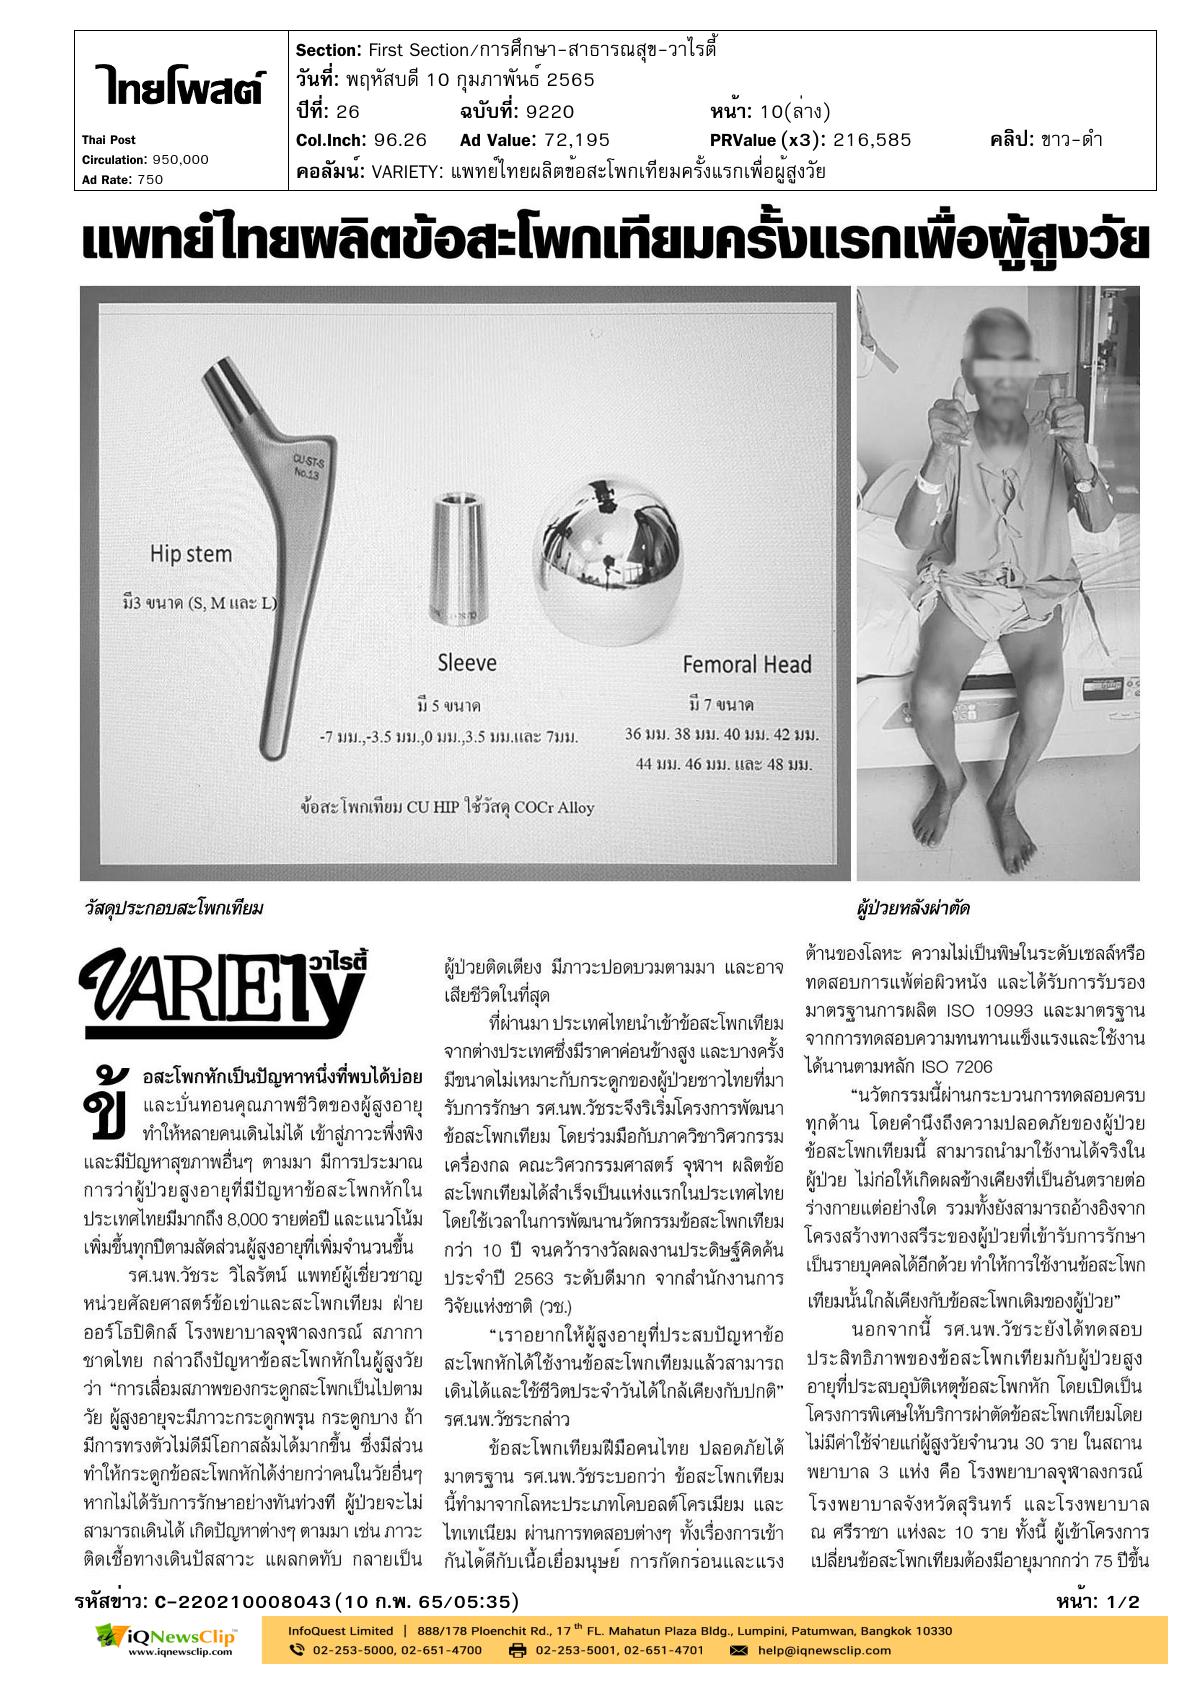 บทความเรื่อง “แพทย์ไทยผลิตข้อสะโพกเทียมครั้งแรกเพื่อผู้สูงวัย”